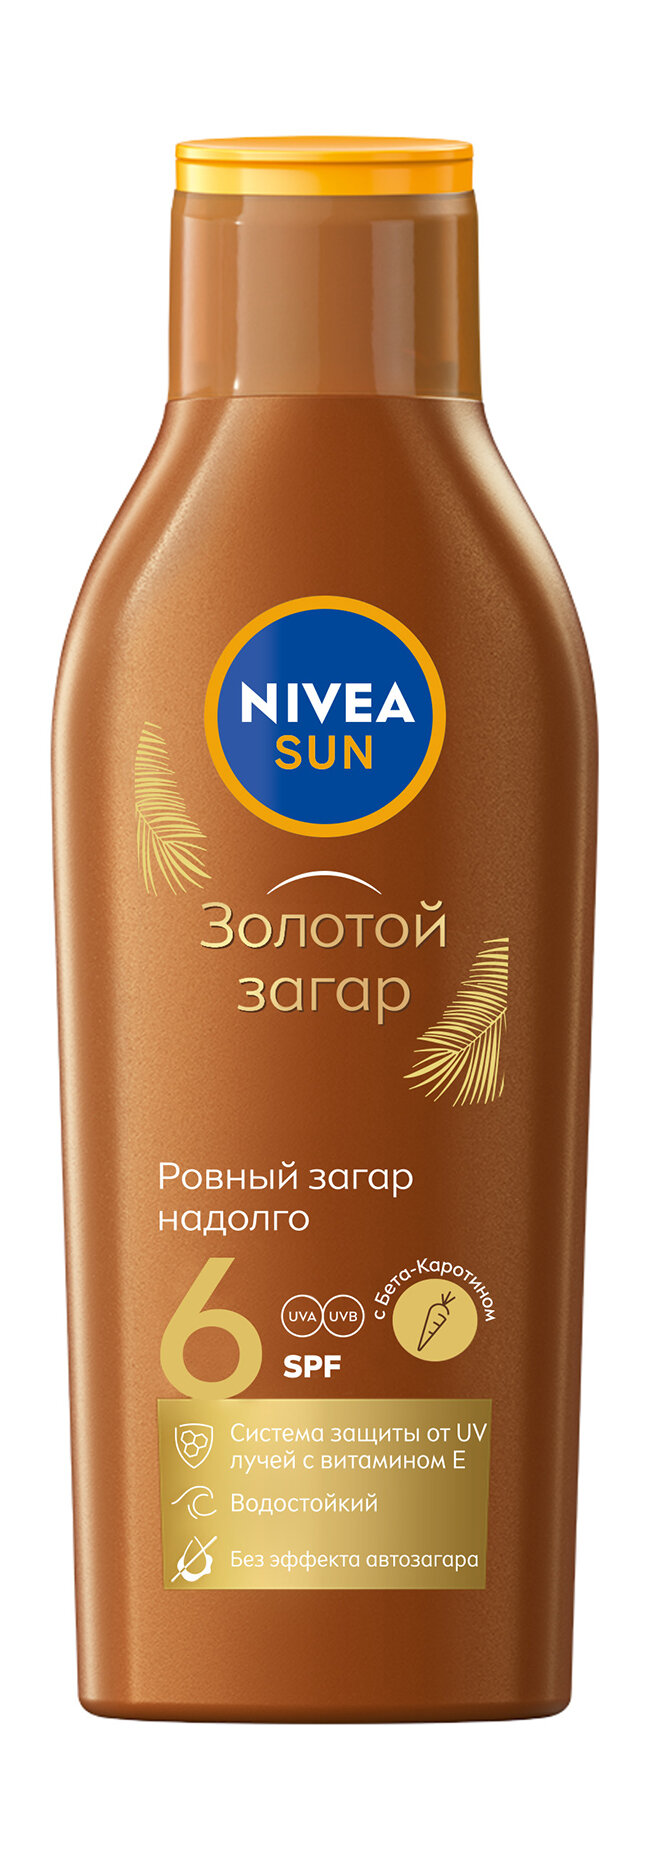 NIVEA Лосьон солнцезащитный с Витамином Е и каротином SPF 6, 200 мл